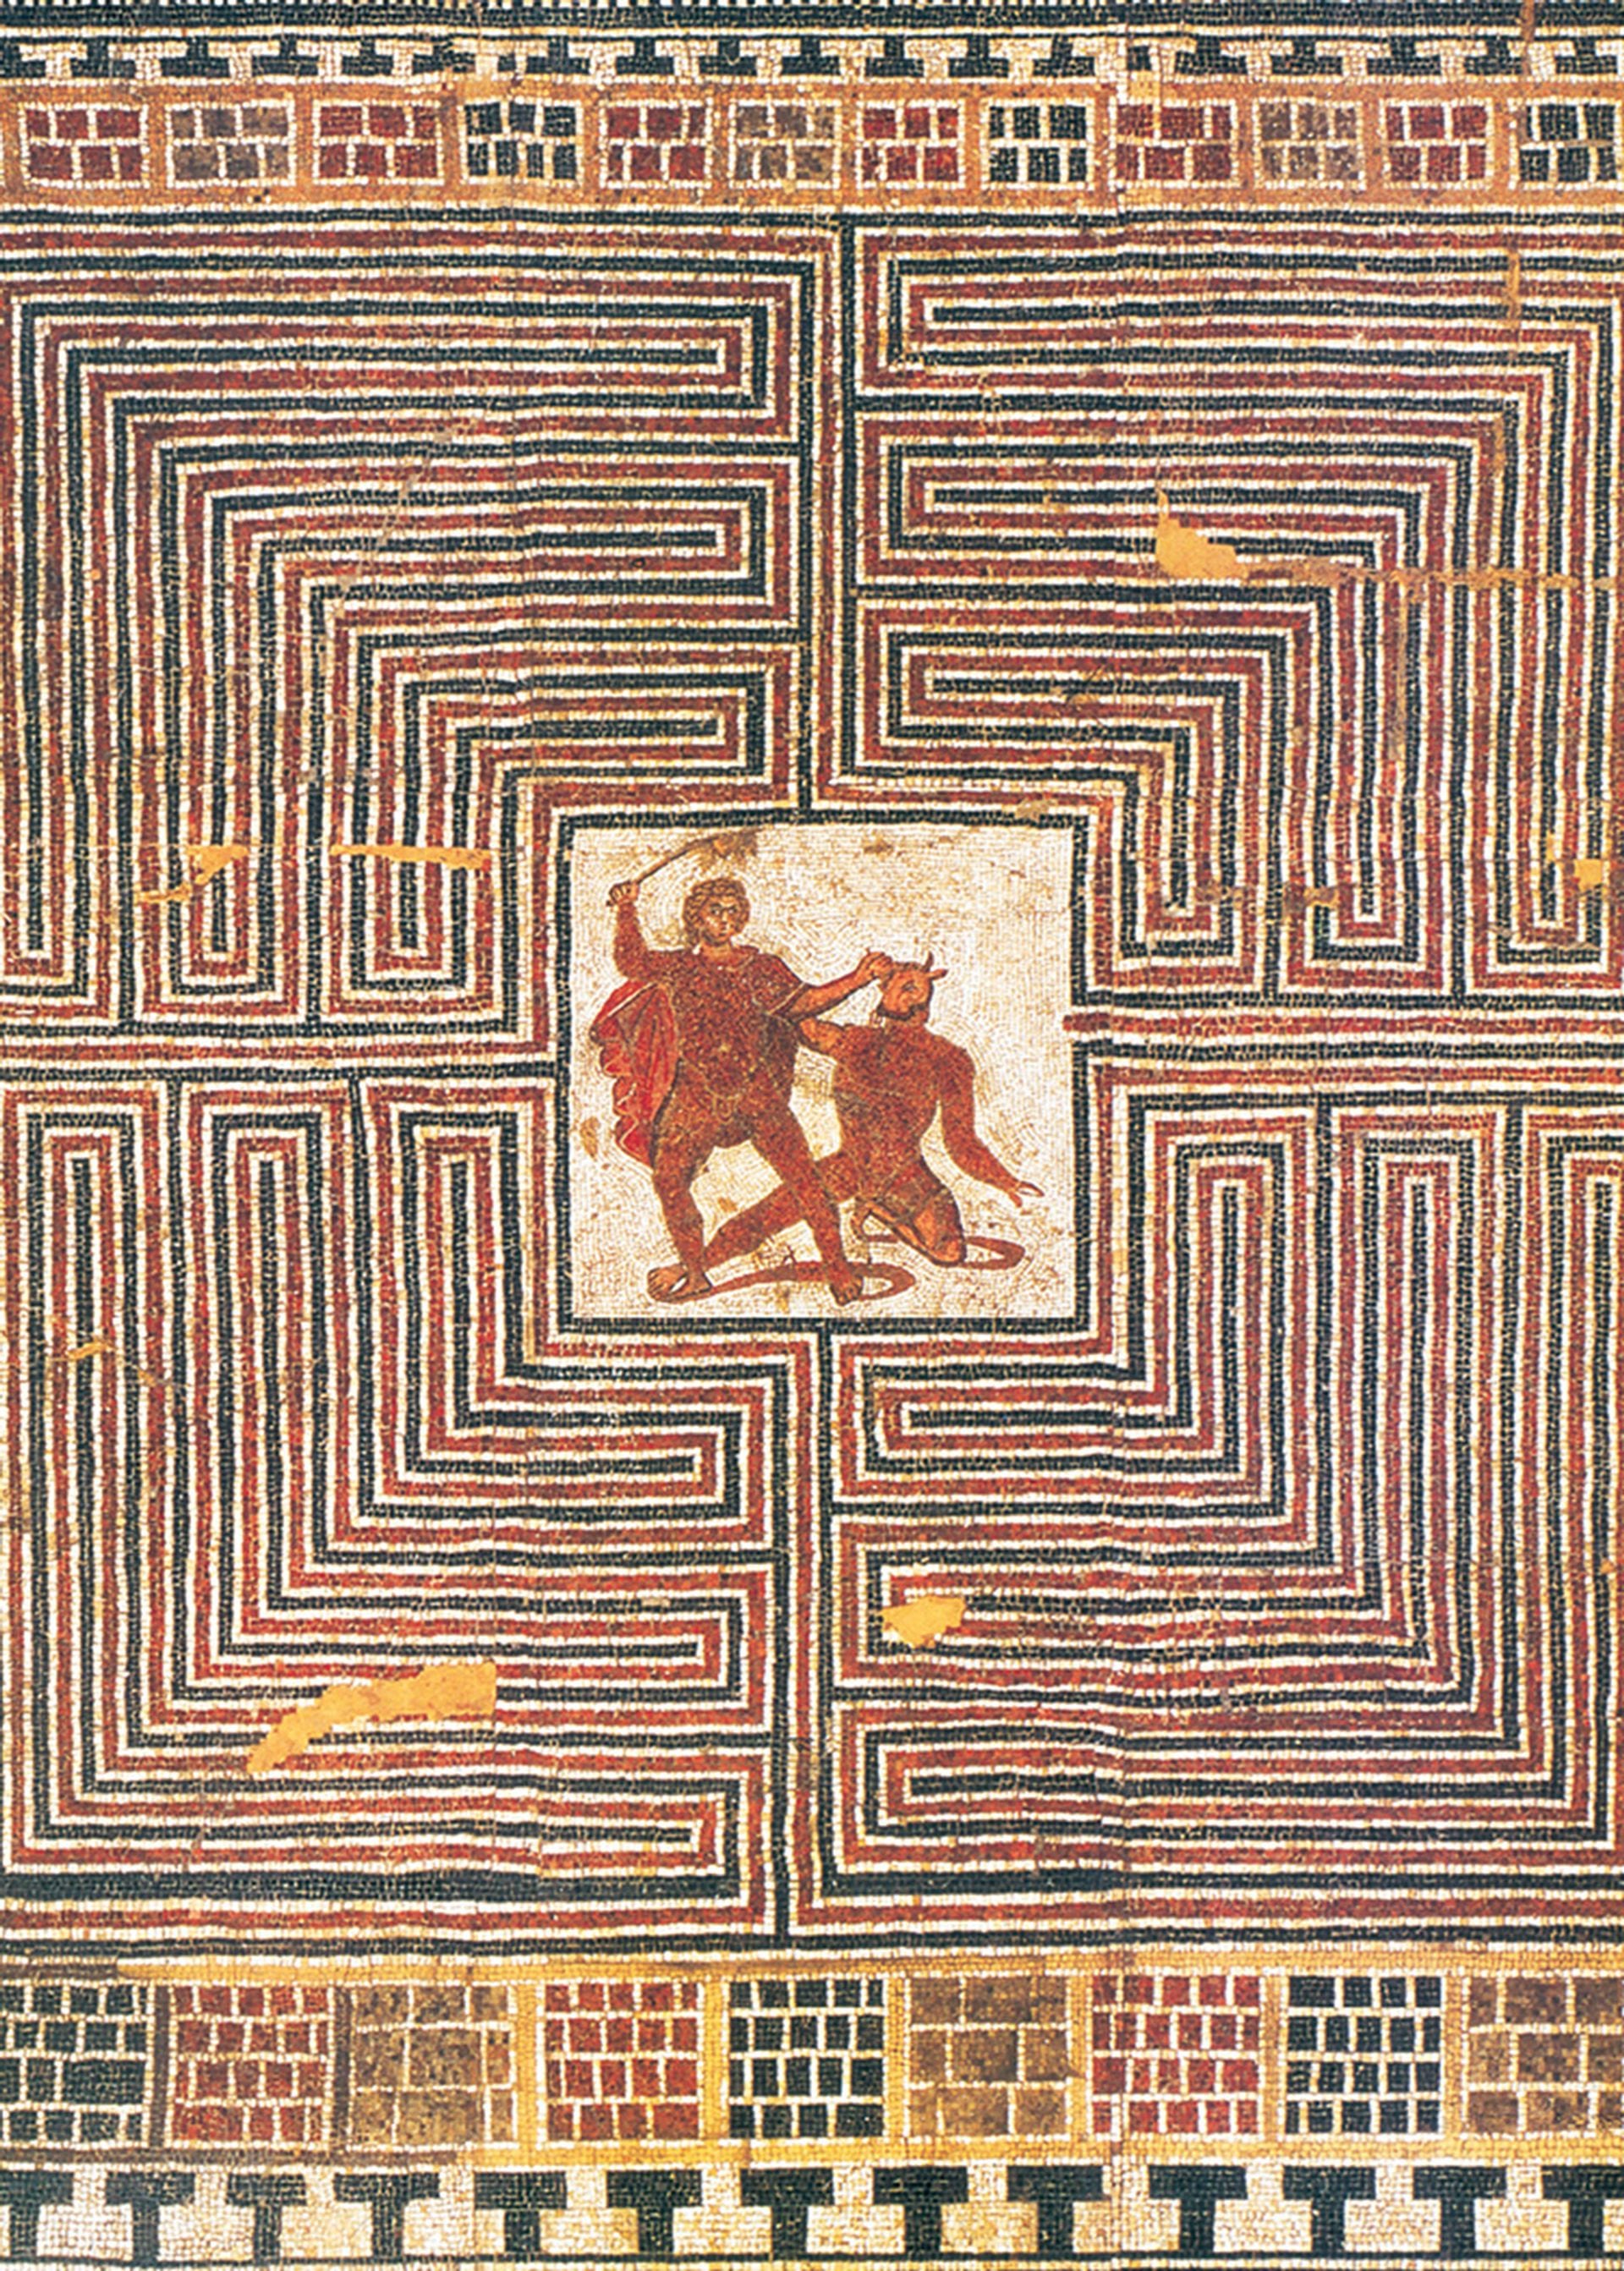 Mosaico romano que representa la lucha entre Teseo y el Minotauro; proviene de la villa romana de Loigersfelder, Austria.